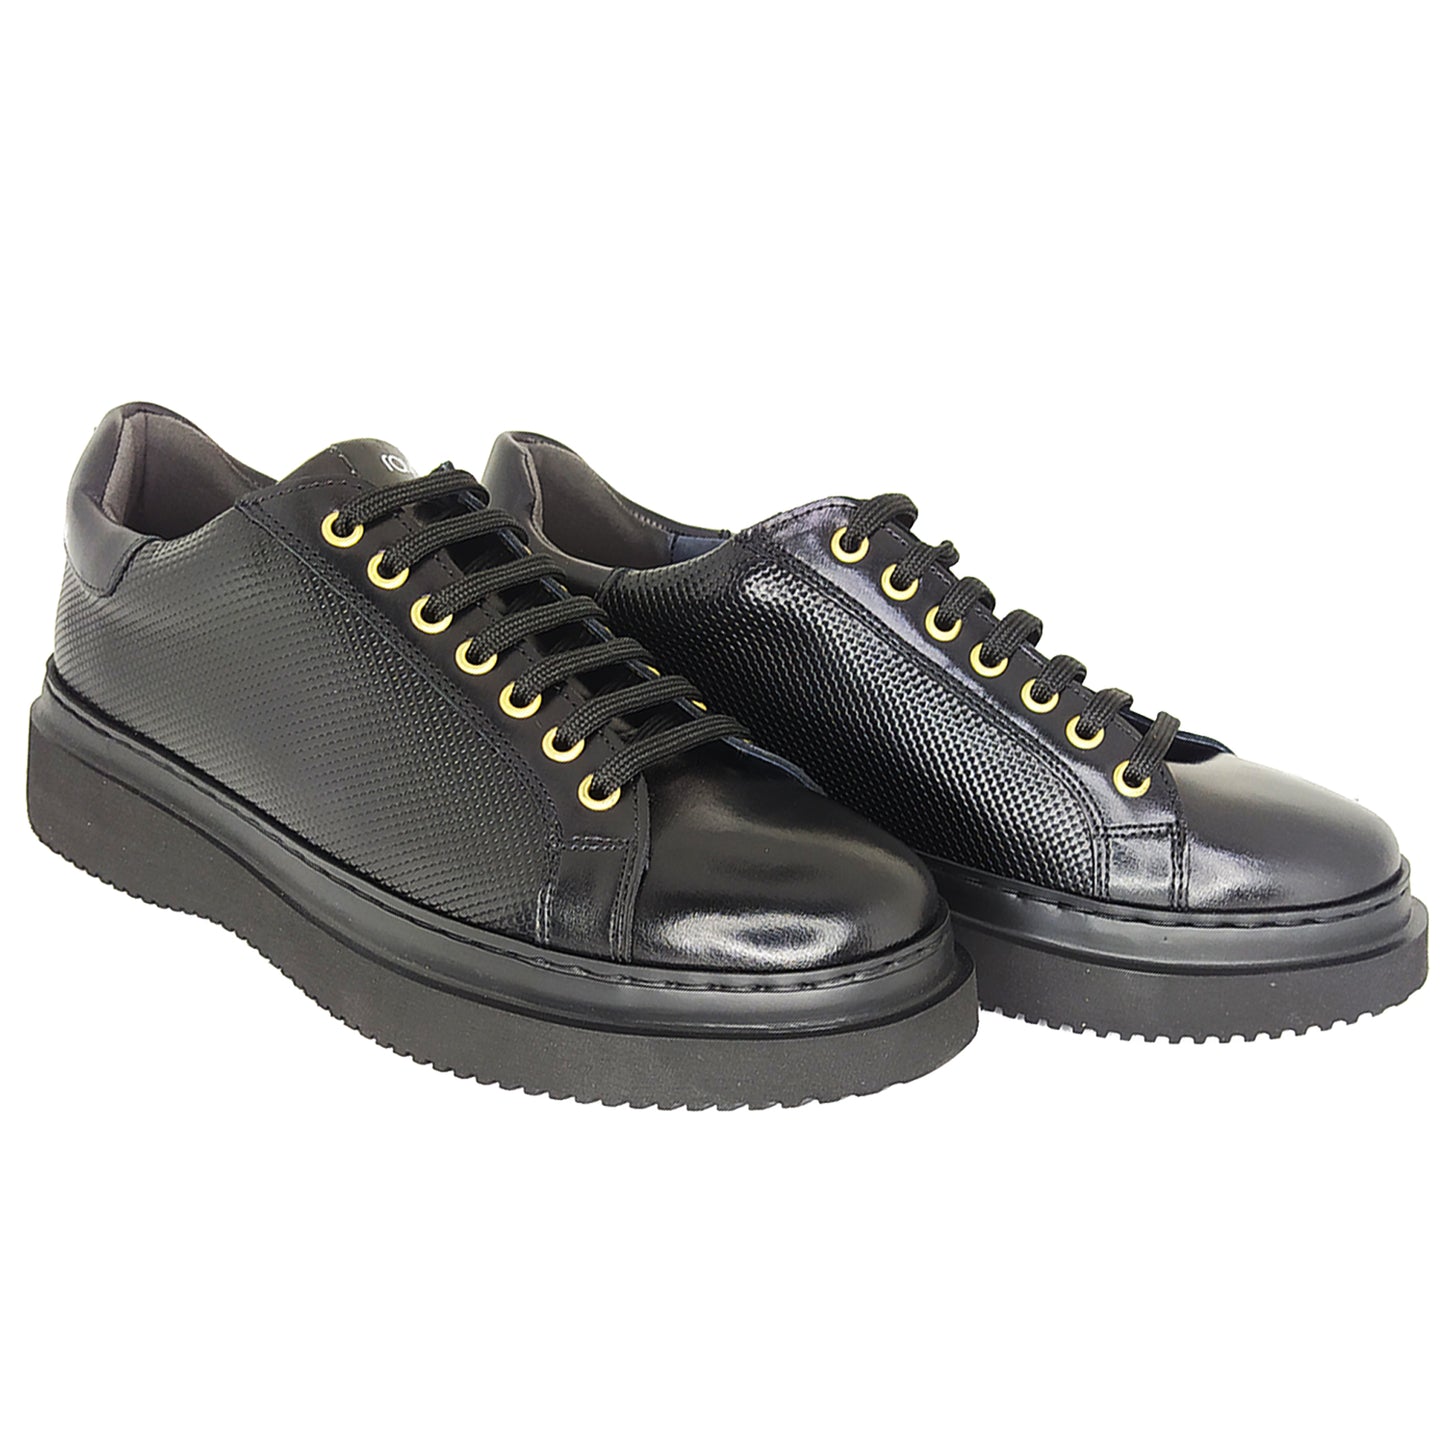 Χειροποίητα Δερμάτινα Sneakers Παπούτσια Μαύρα 823 BLACK YW